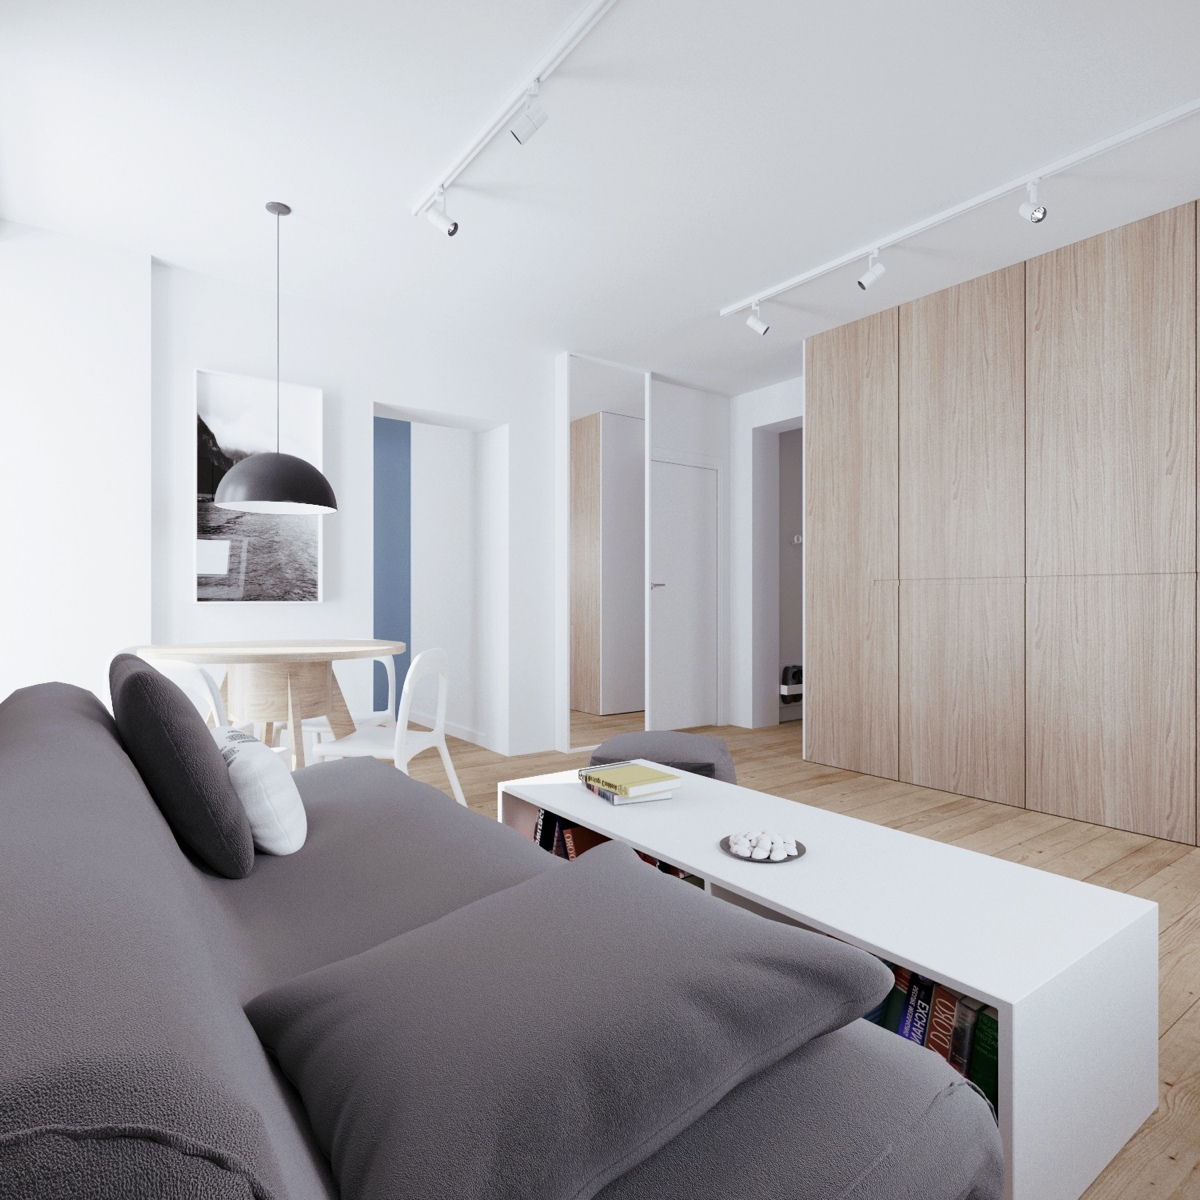 Wedo thiết kế nội thất phòng khách thông minh cho căn hộ tầng áp mái nhà